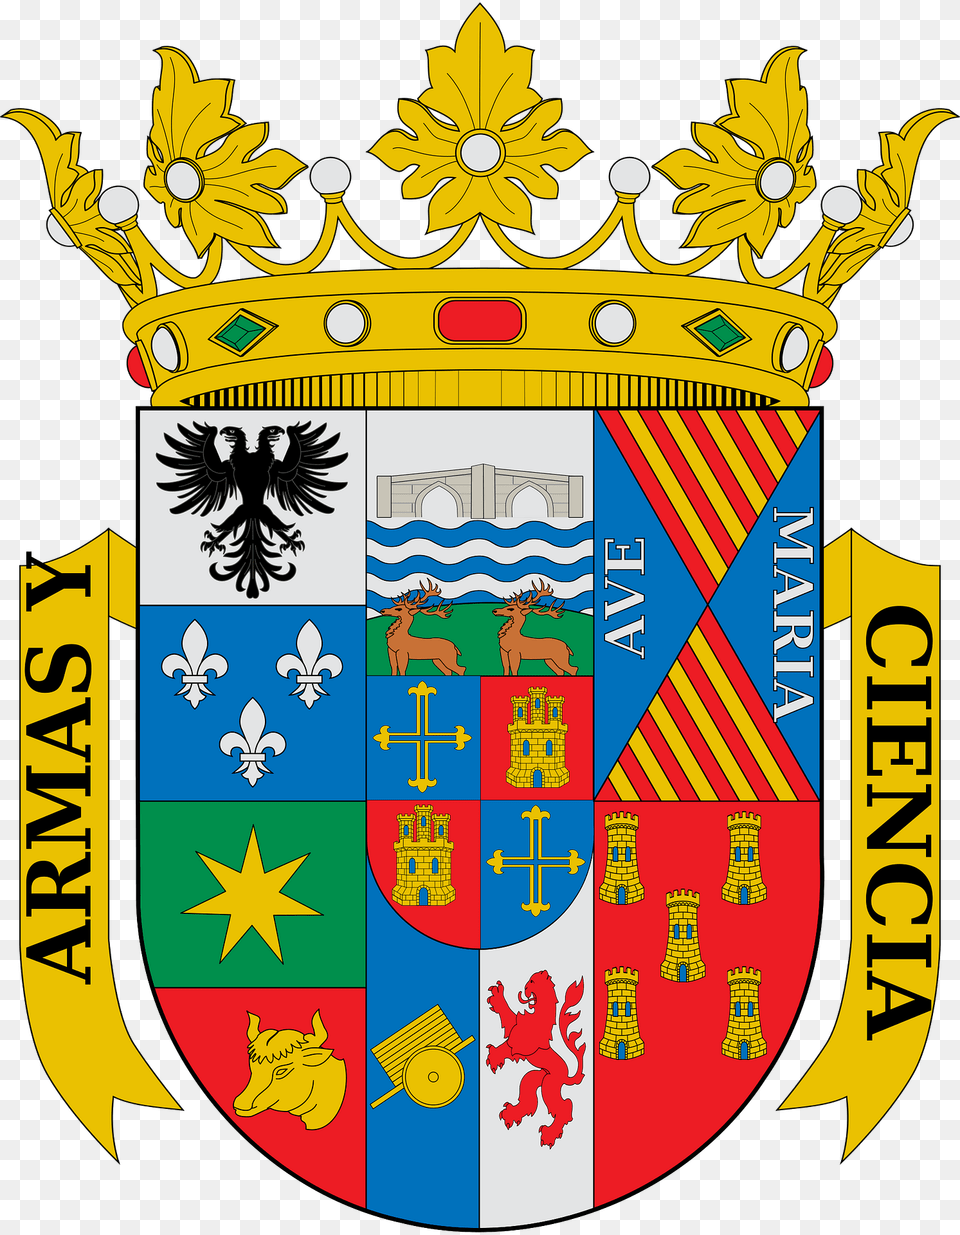 Escudo De La Provincia De Palencia Clipart, Armor, Symbol, Shield, Emblem Png Image